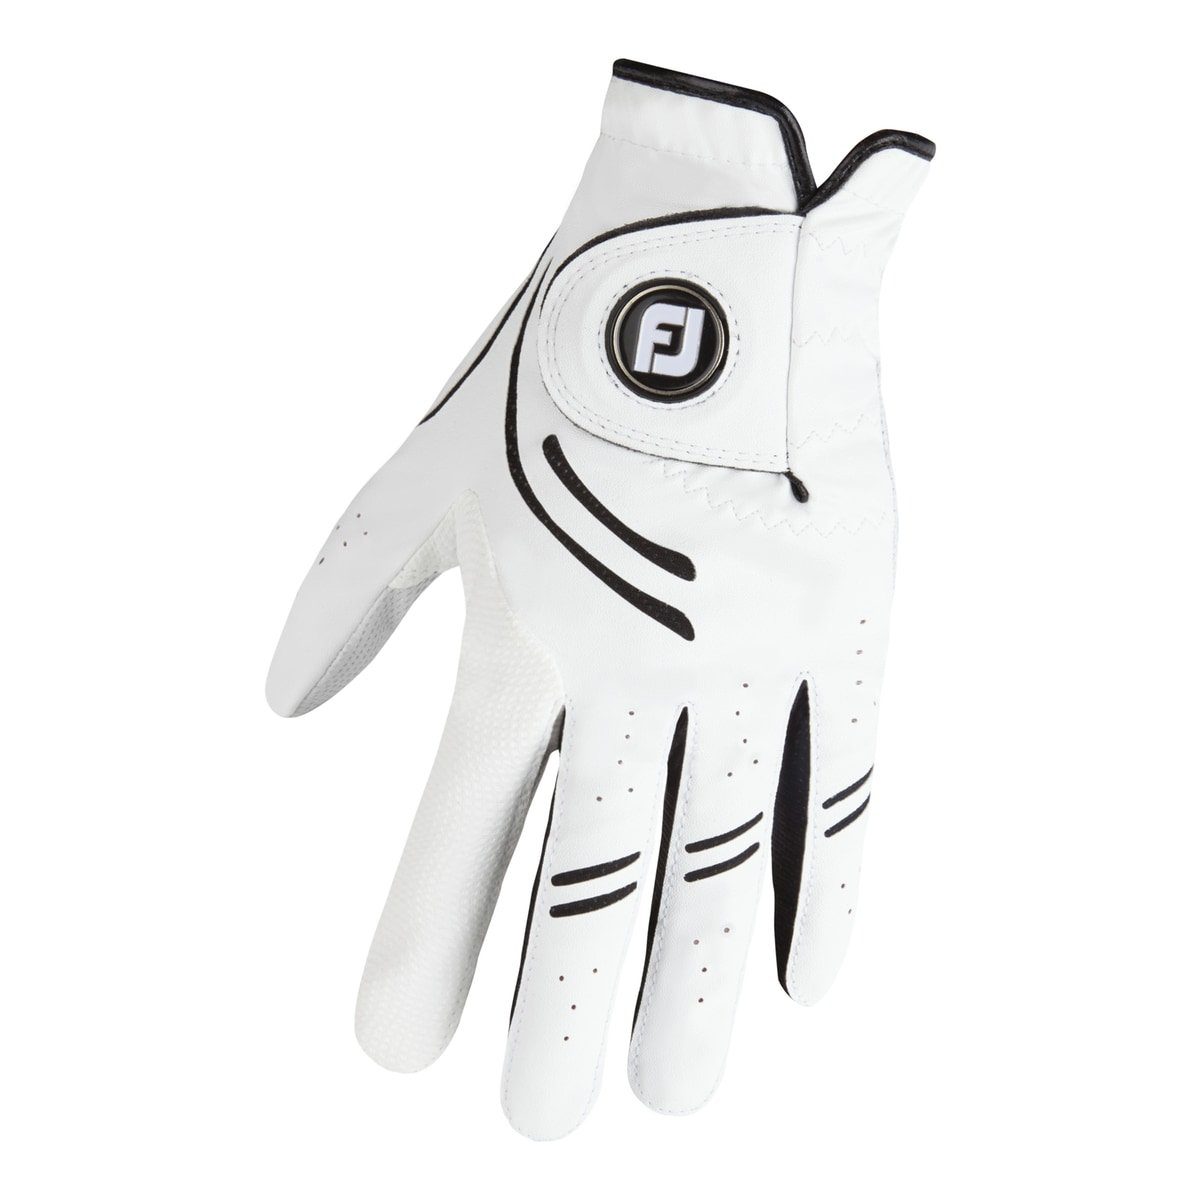 Weiß (Handschuh) GT Footjoy mit Golfhandschuhe Herren Golfhandschuh Passform,APL-Leder FOOTJOY Ballmarker,Präzise Xtreme